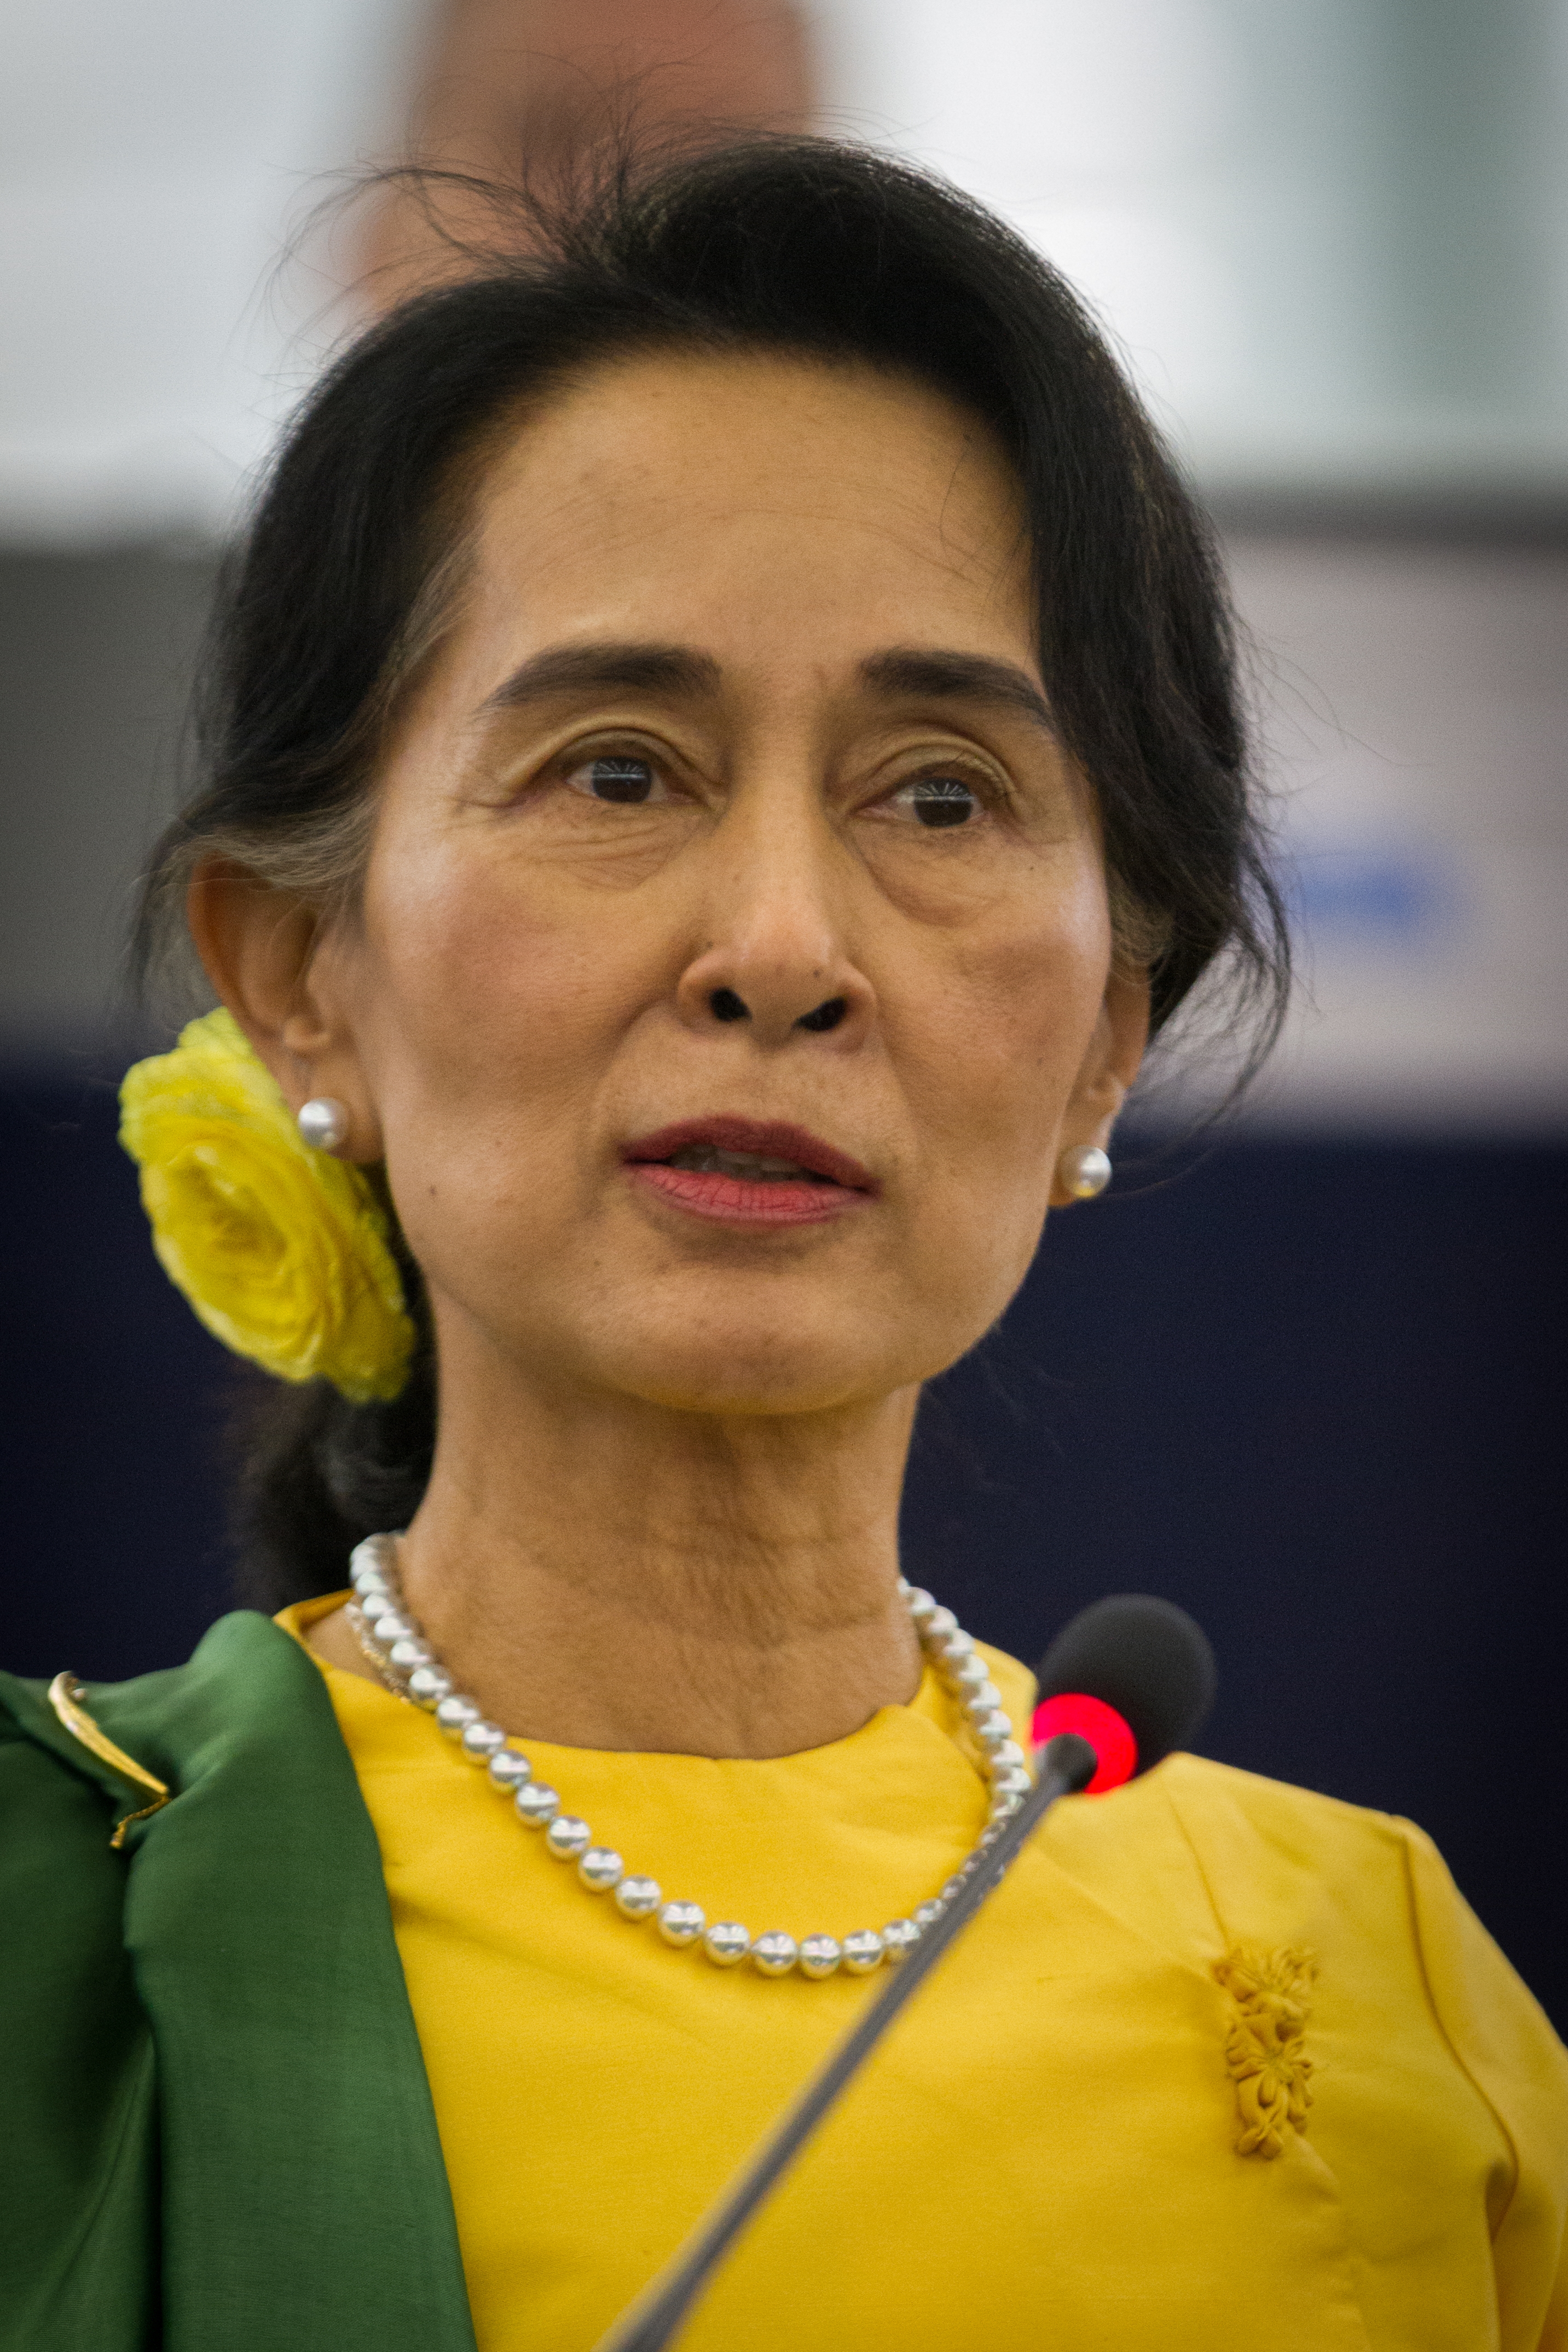 auteur Aung San Suu Kyi de la citation La révolution par excellence est celle de l'Esprit, né d'une conviction intellectuelle de la nécessité d'un changement dans ces attitudes et valeurs mentales qui façonnent le cours du développement d'une nation. Une révolution qui vise simplement à modifier les politiques et les institutions officielles en vue d'une amélioration des conditions matérielles a peu de chances de réussir. Sans révolution de l'esprit, les forces qui ont produit les iniquités de l'ancien ordre continueraient d'être opérationnelles, constituant une menace constante pour le processus de réforme et de régénération.